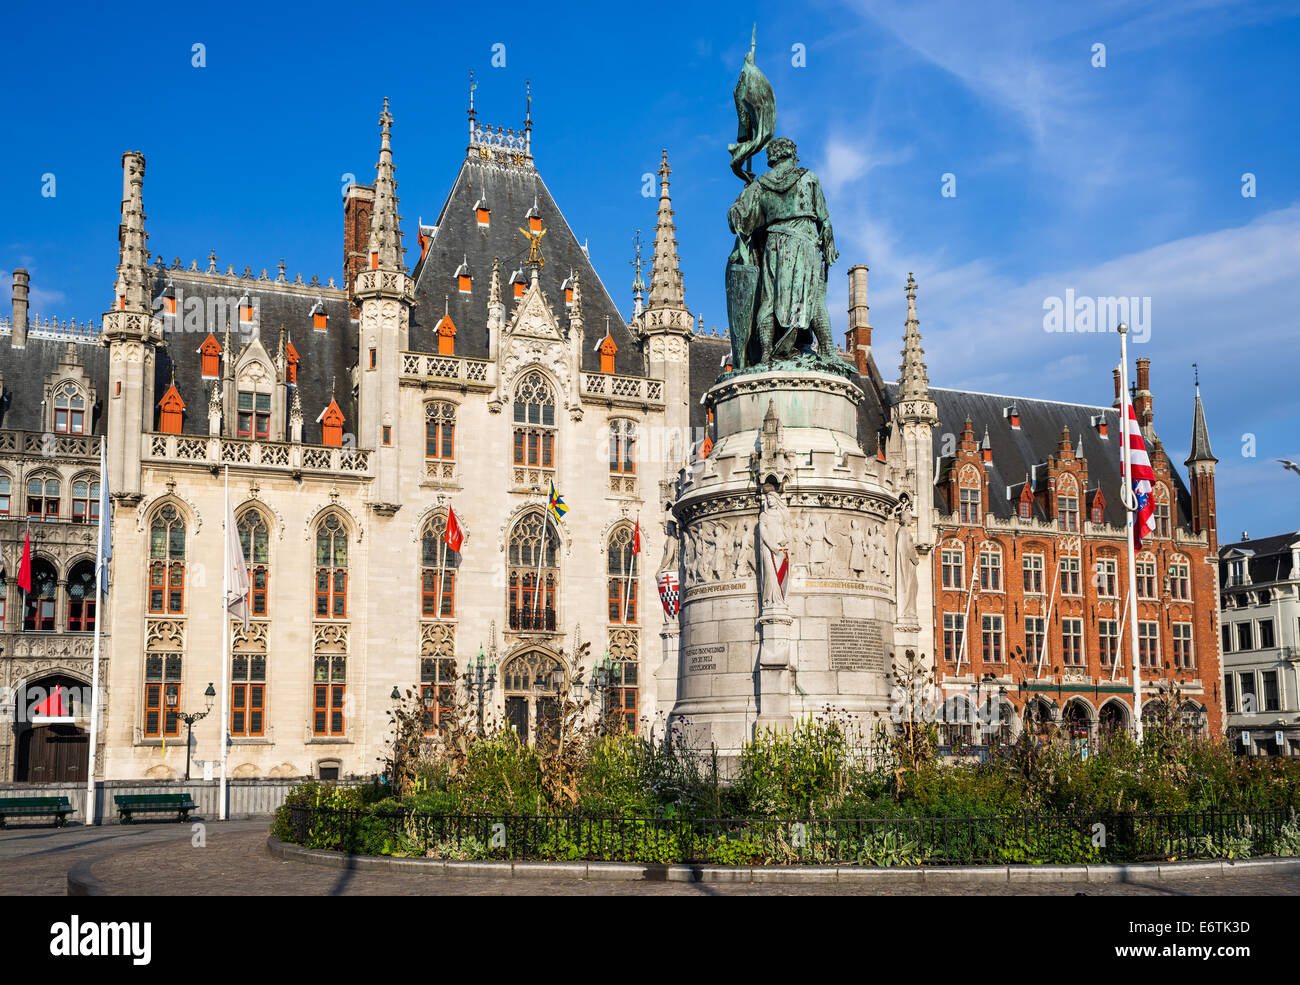 Provinciaal Hof construit en 1284 neogothical s'appuyant sur la Grand-place place à Bruges, Belgique. Banque D'Images